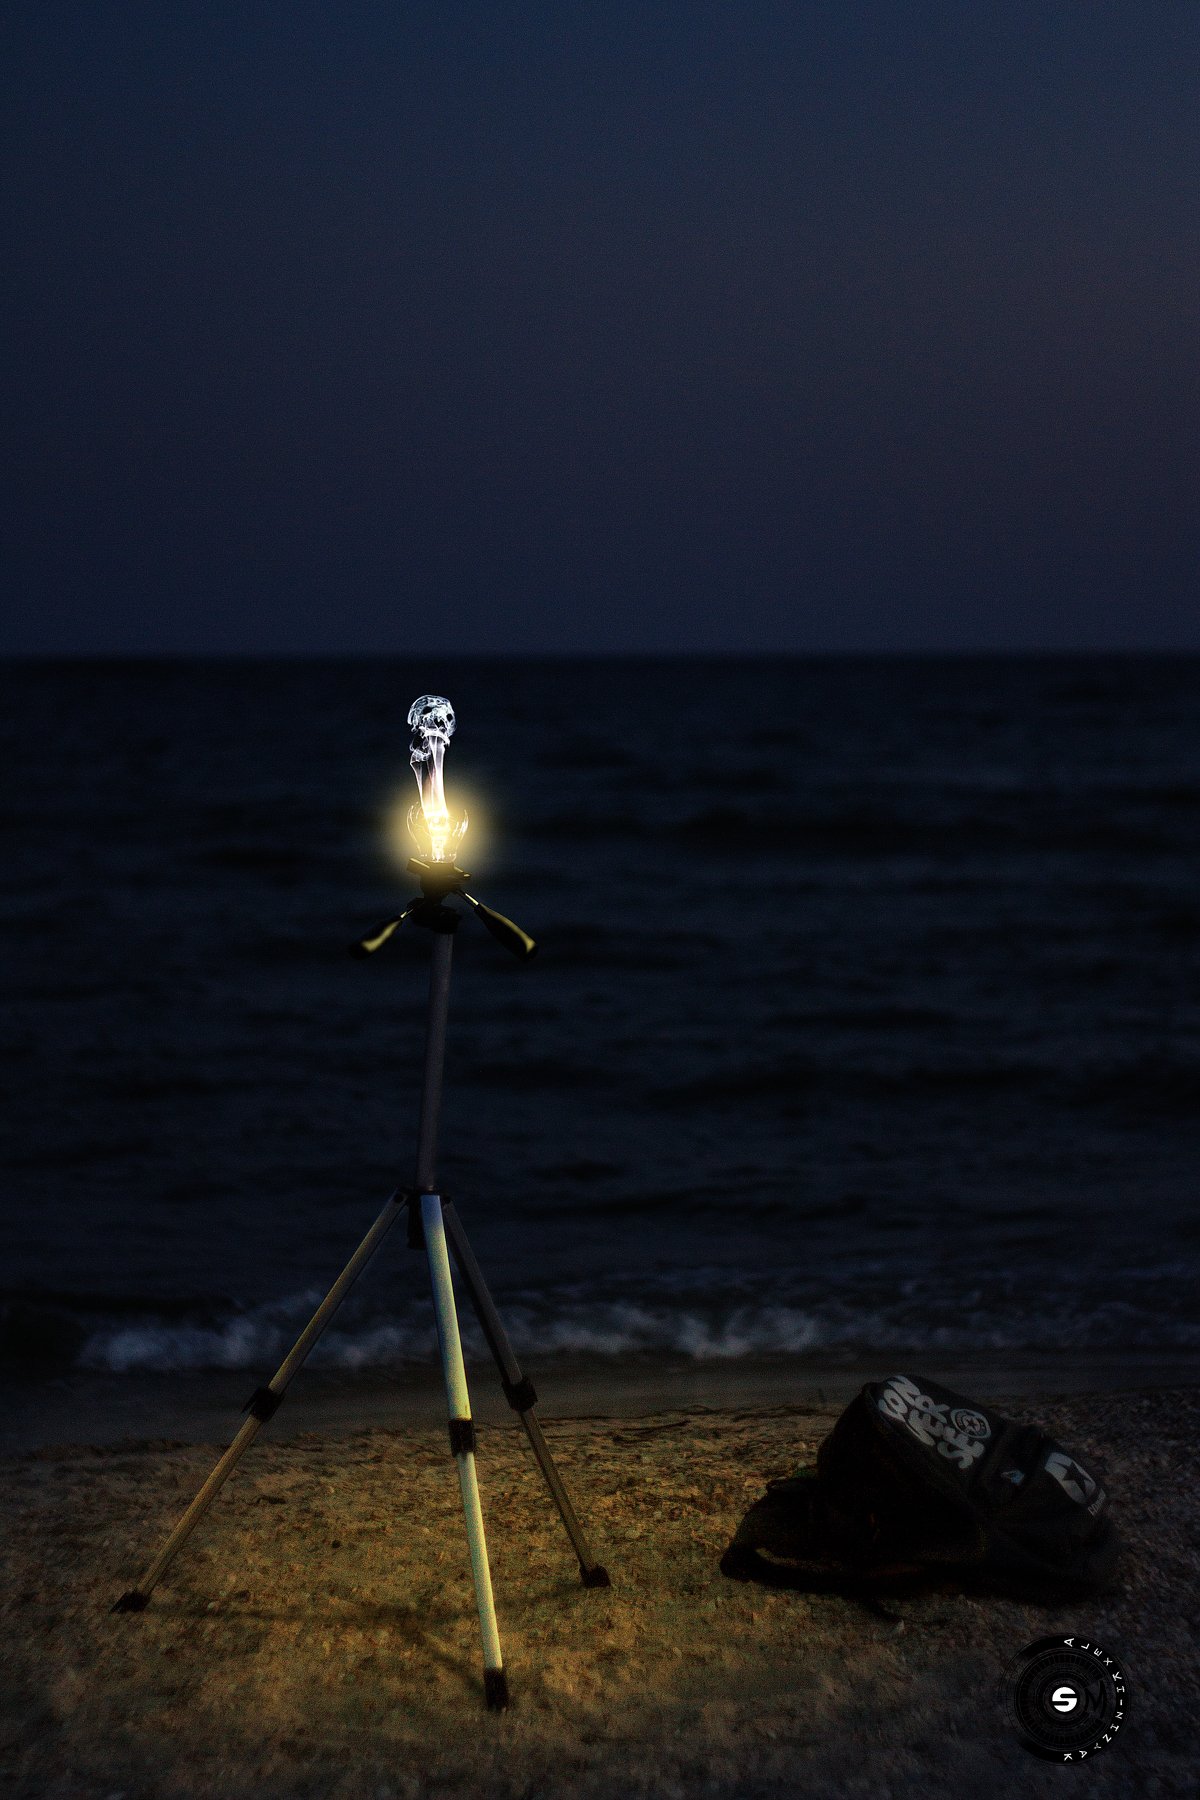 маяк, ноч, штатив, рюкзак, море, вода, волны, песок, свет, лампочка, лампа, вечер, ночь, небо, пляж, прибой, Simplici_mortE